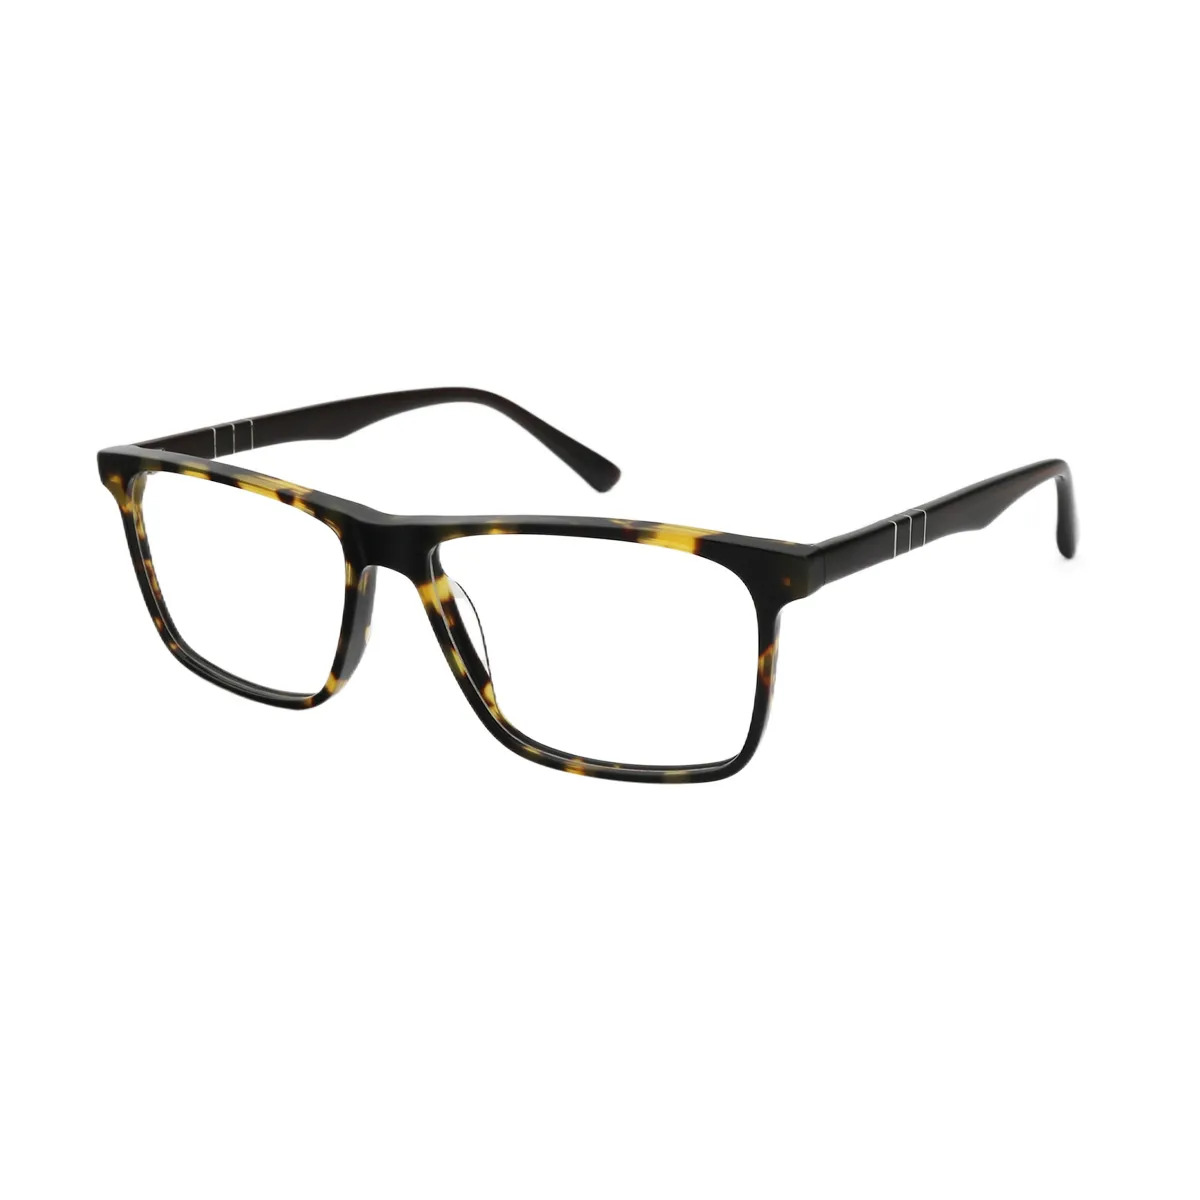 Bruce - Square  Glasses for Men